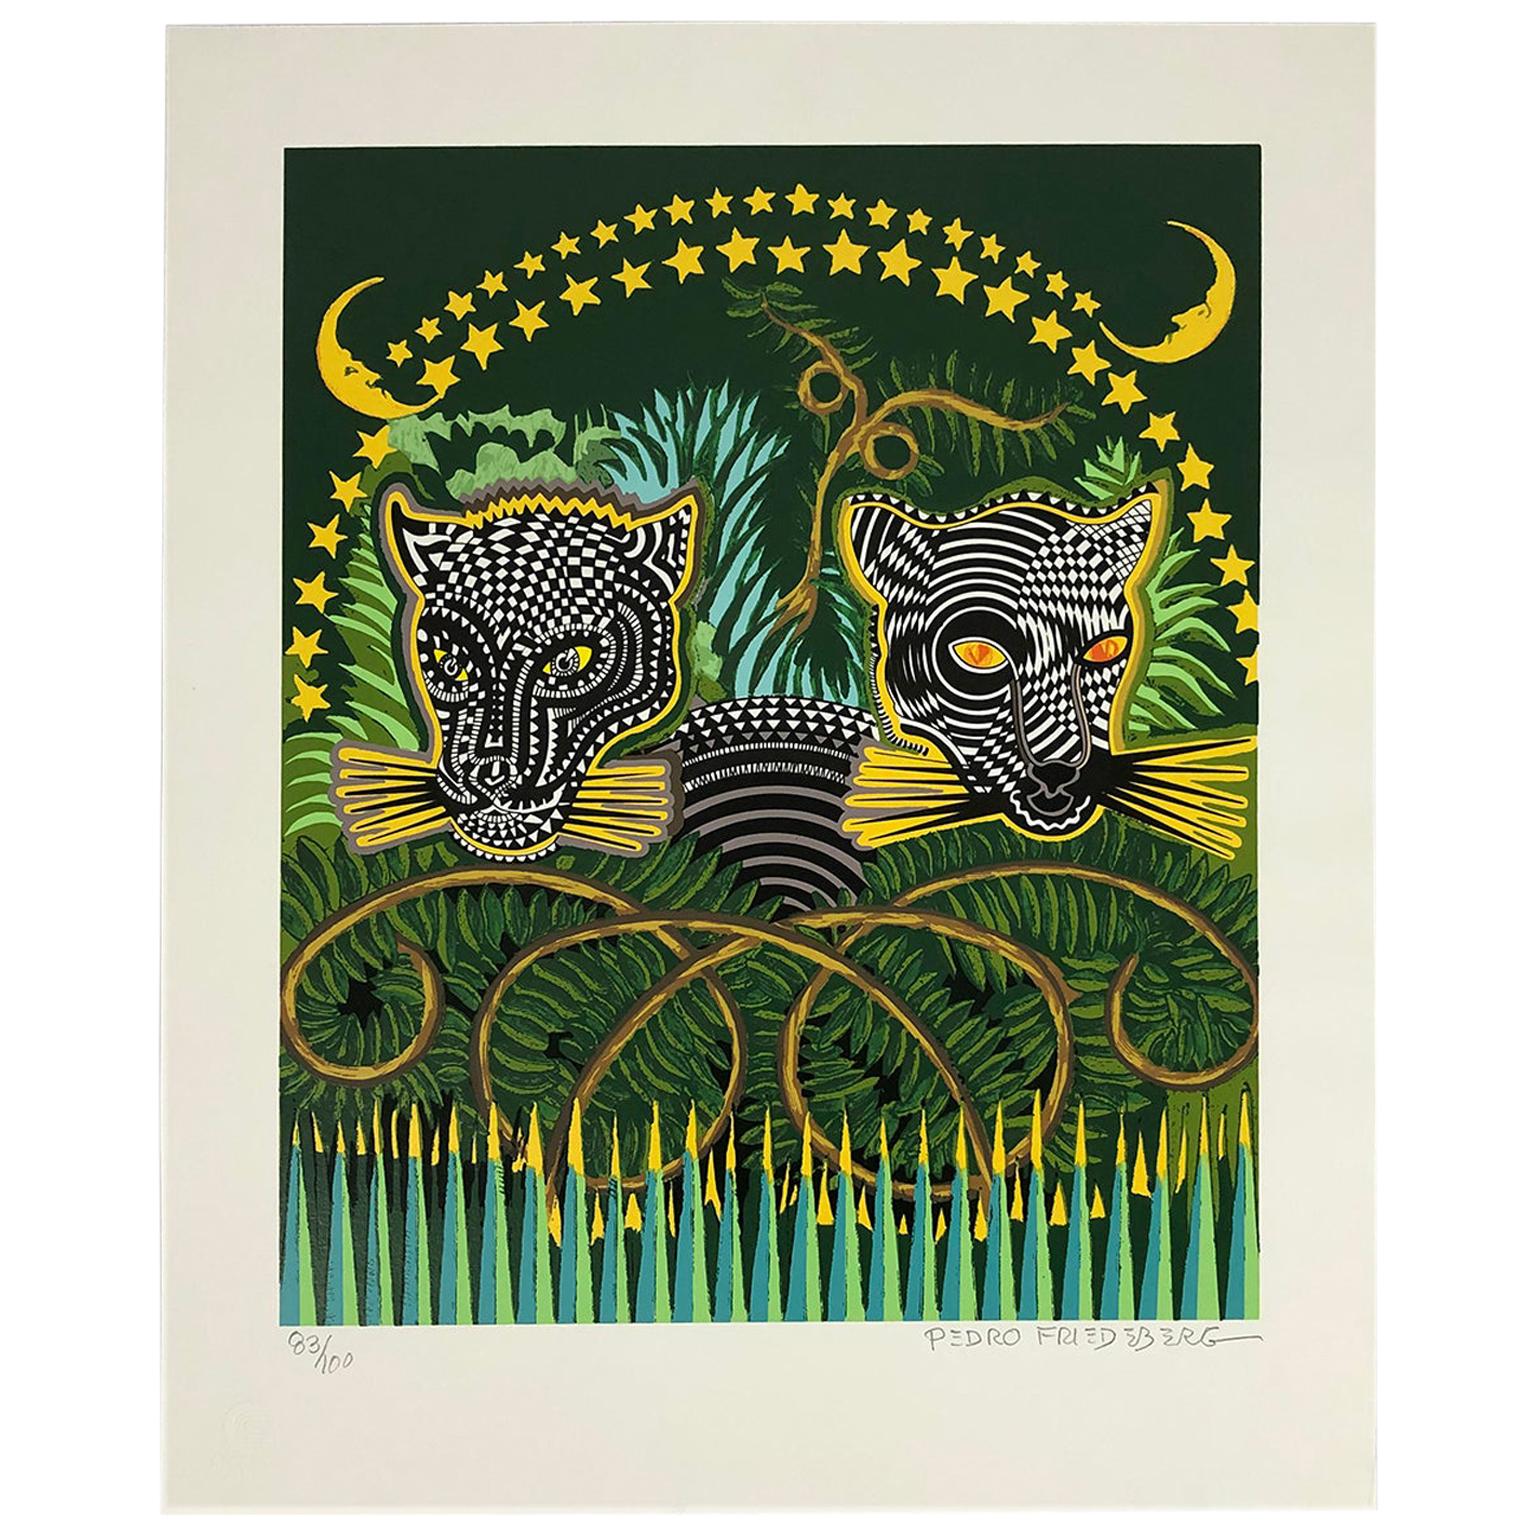 Pedro Friedeberg “Jaguares” Silkscreen Art Unframed